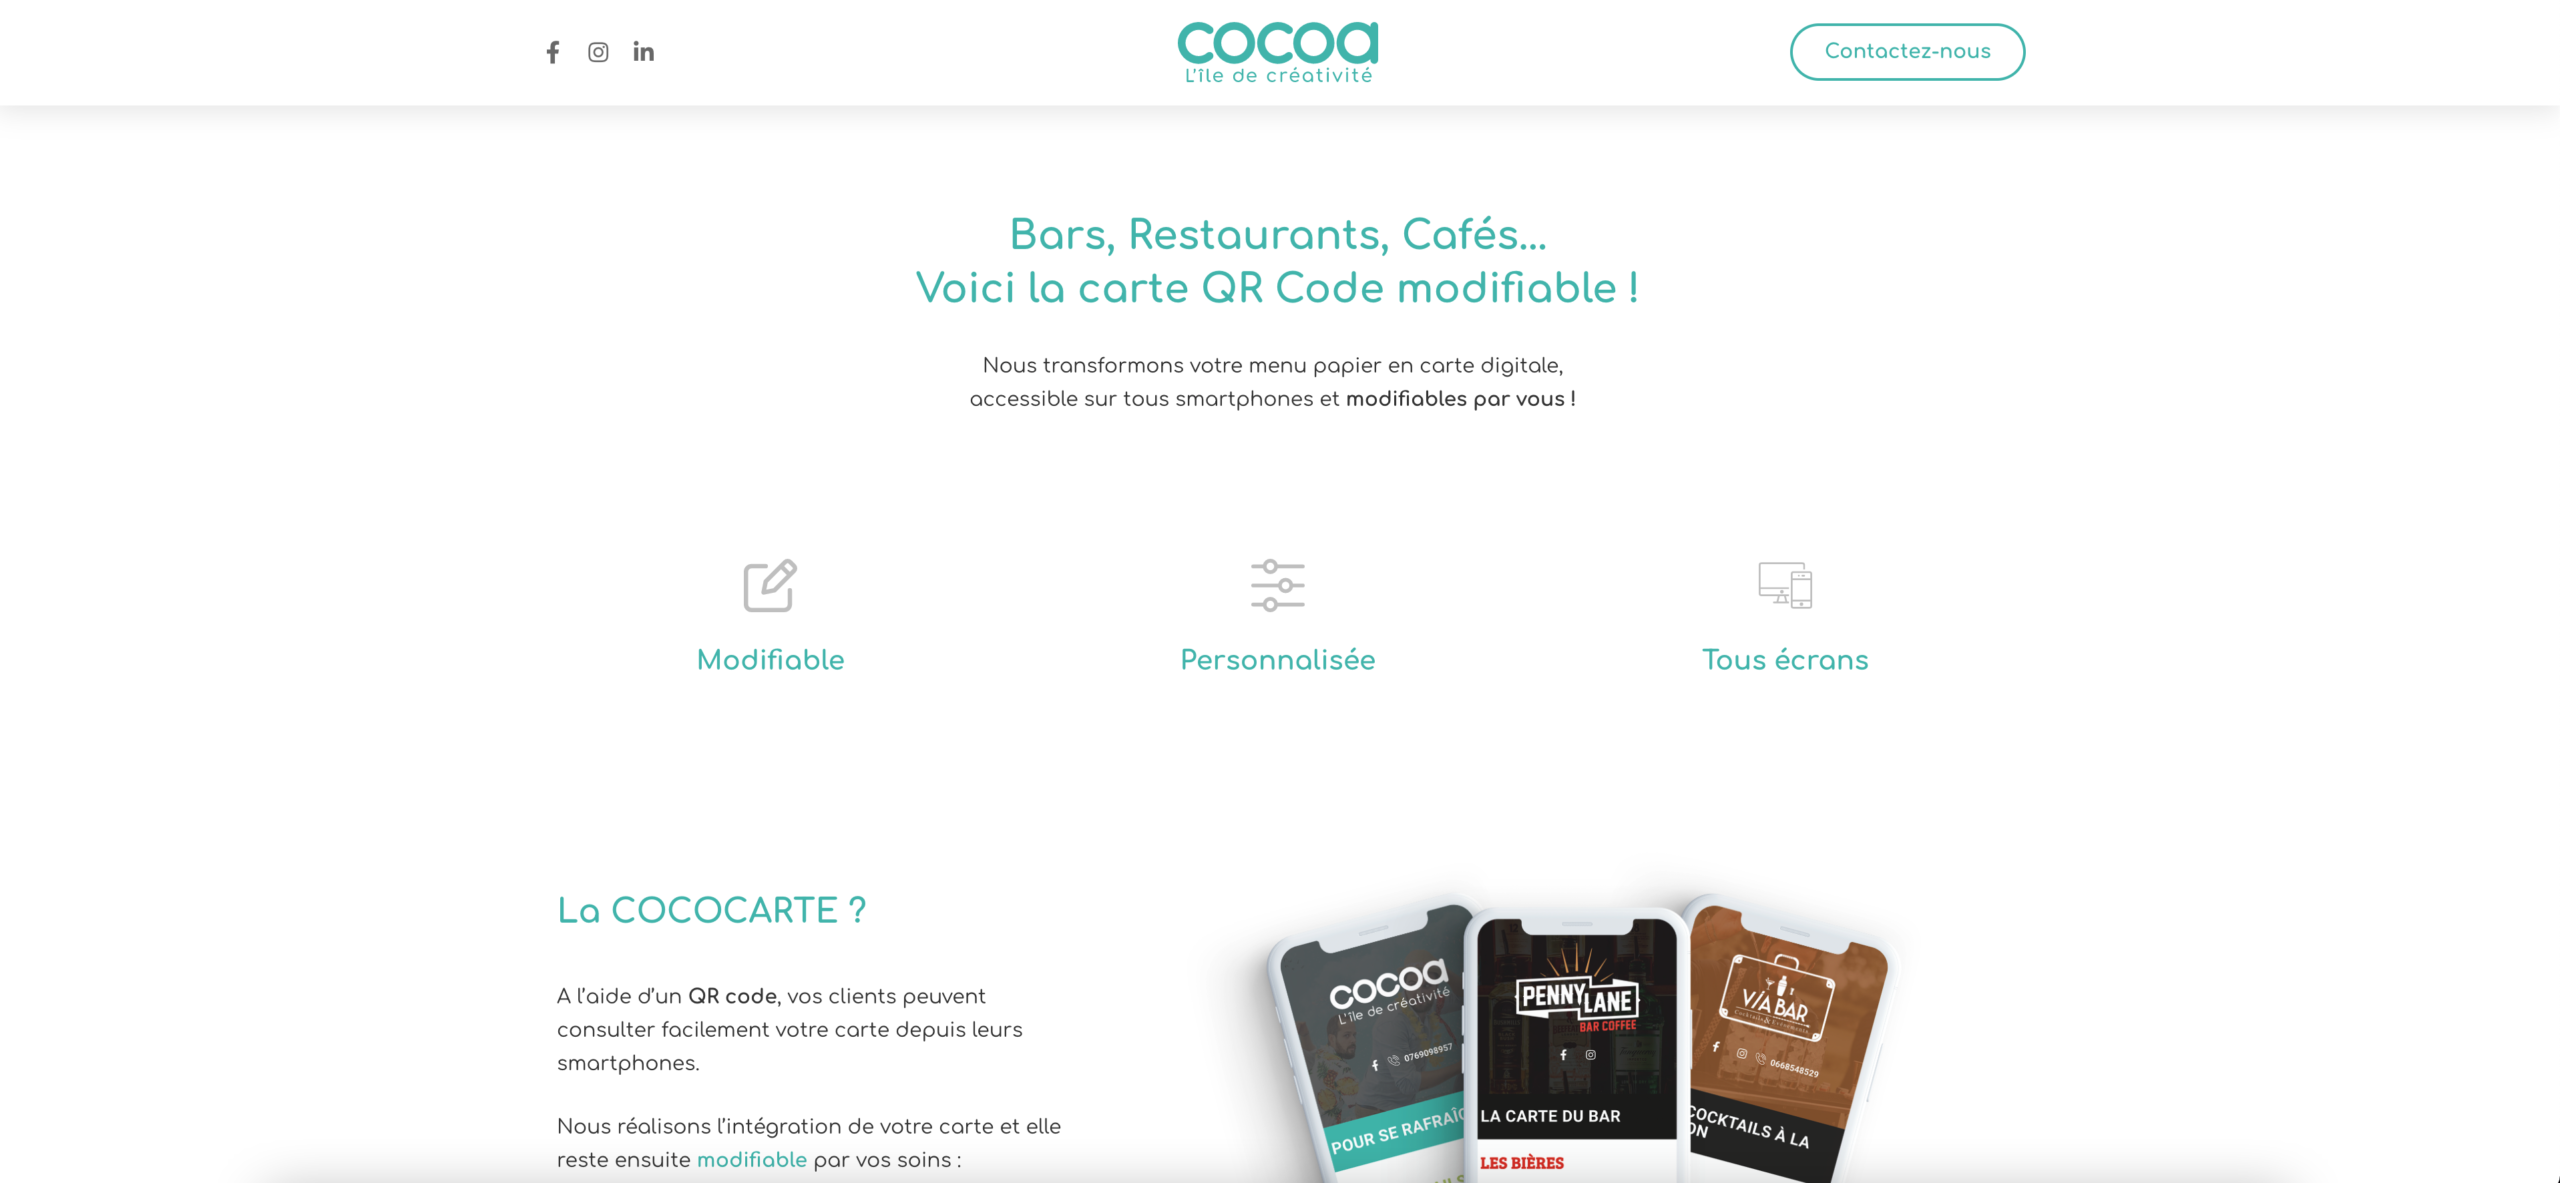 Cocoa l'île de la créativité : Agence de communication à Lille | Réalisations